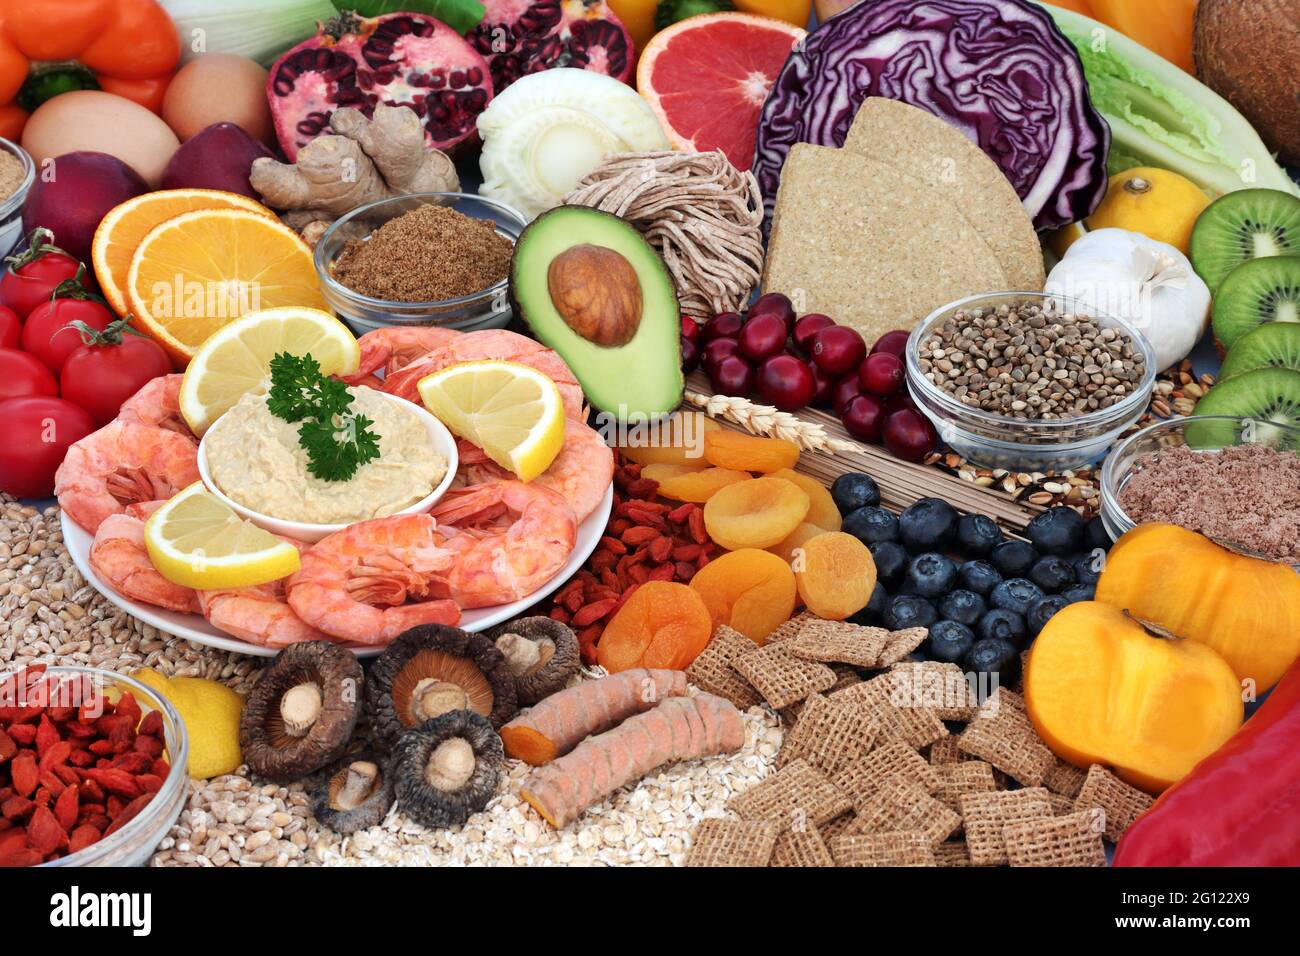 Gesundheit Lebensmittel für niedrigen Cholesterinspiegel und niedrigen  Blutdruck Diät hoch in Antioxidantien, Protein, Omega-3, Vitamine,  Mineralien, Anthocyane und Ballaststoffe. Gesundheitswesen Stockfotografie  - Alamy